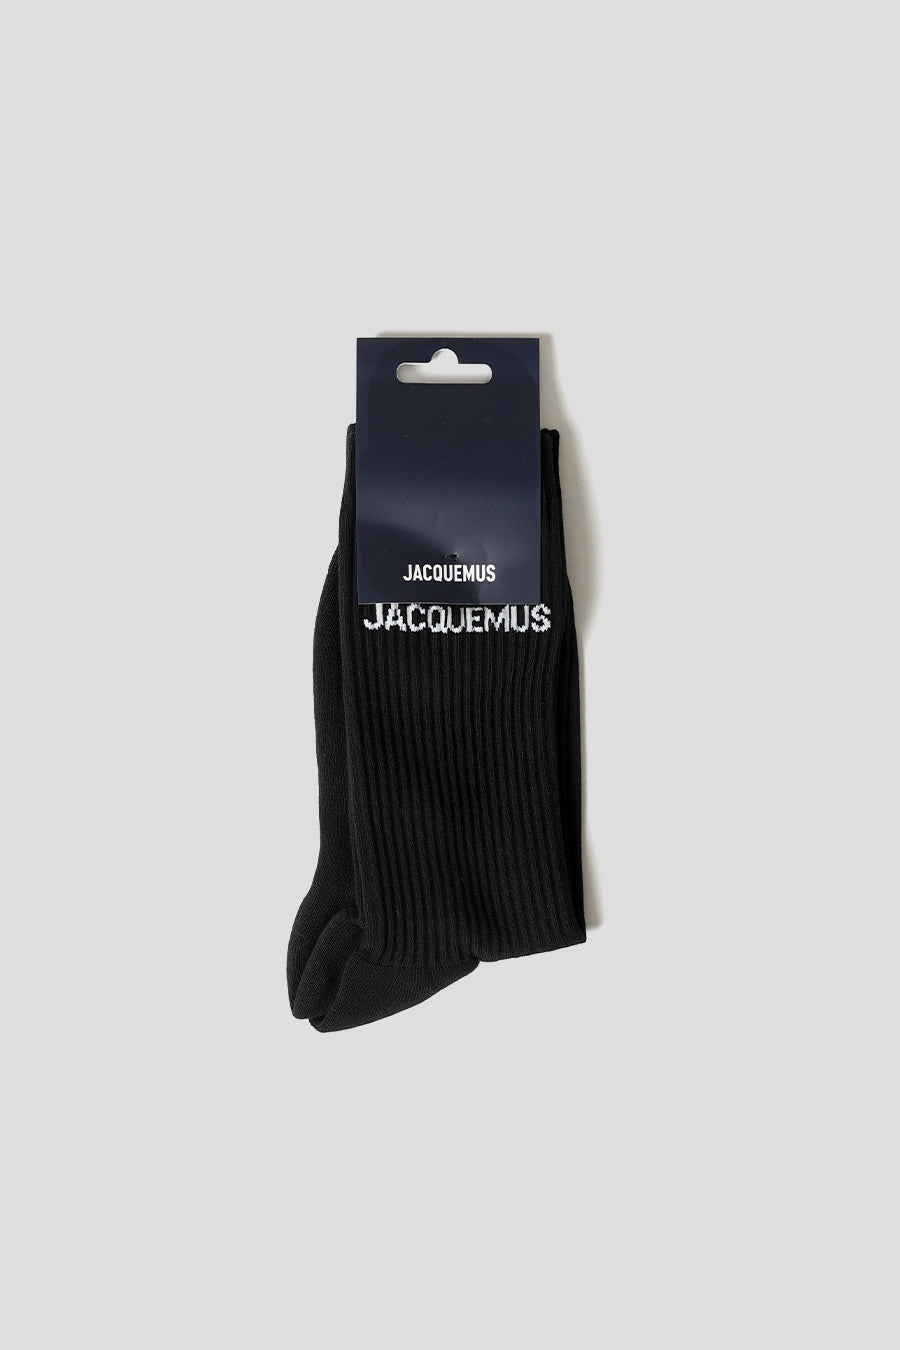 Jacquemus - BLACK SOCKS - LE LABO STORE